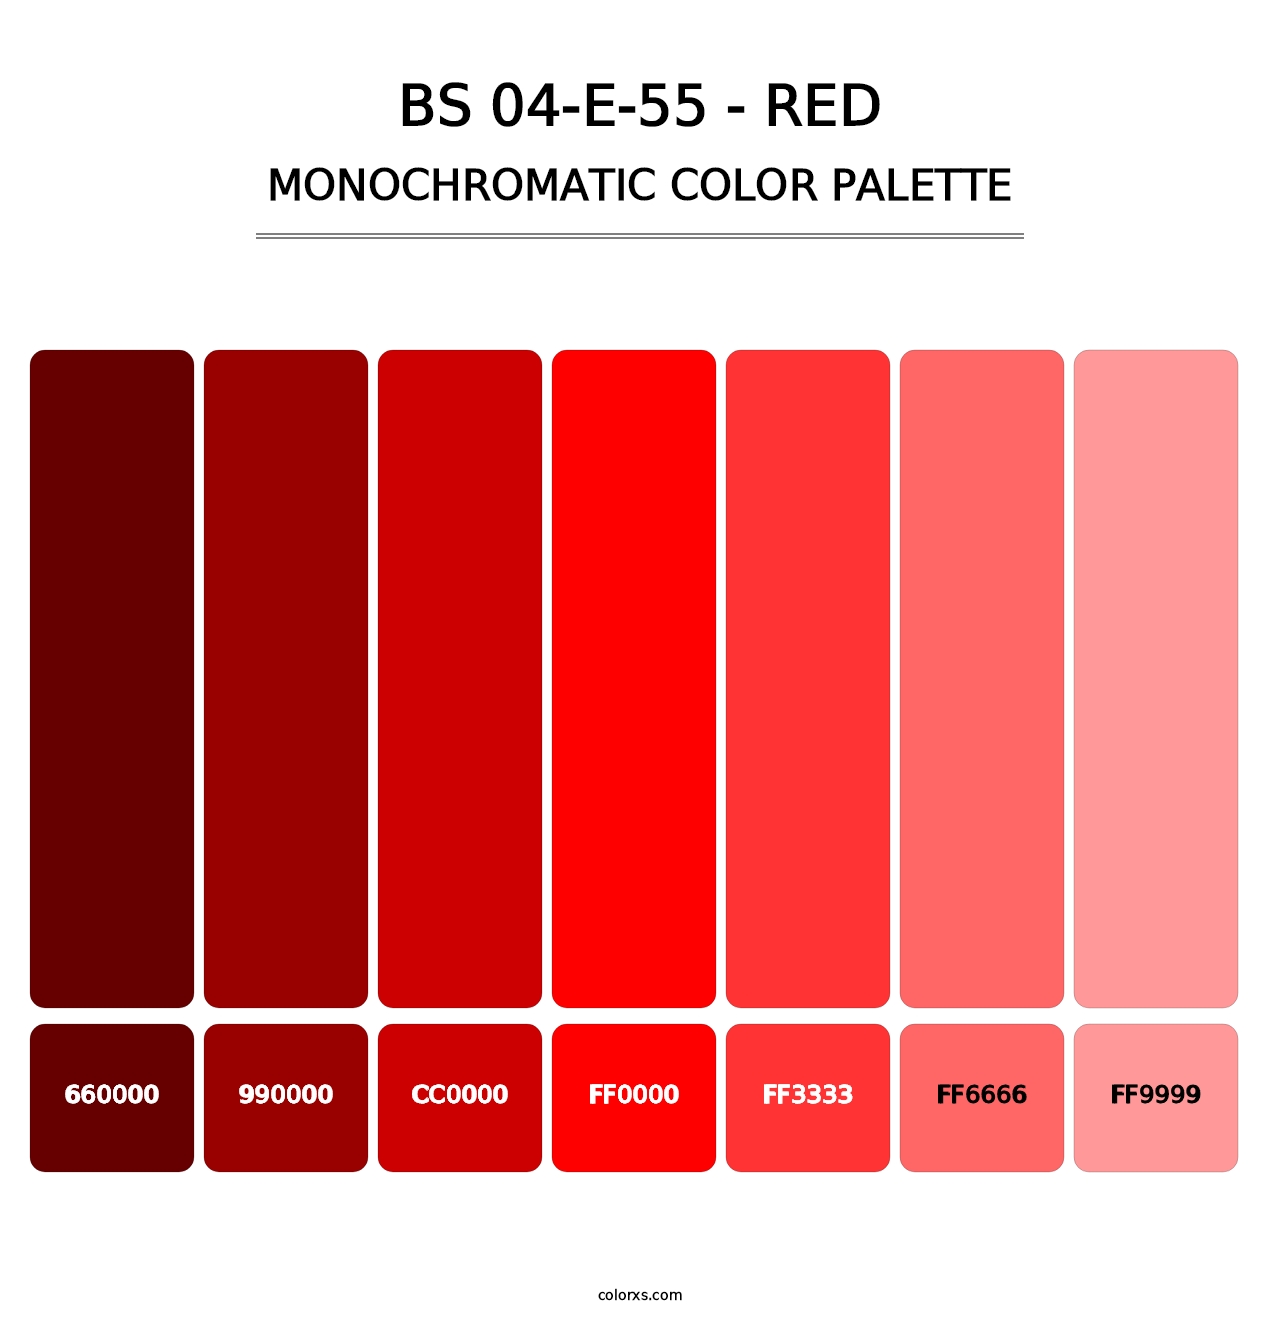 BS 04-E-55 - Red - Monochromatic Color Palette